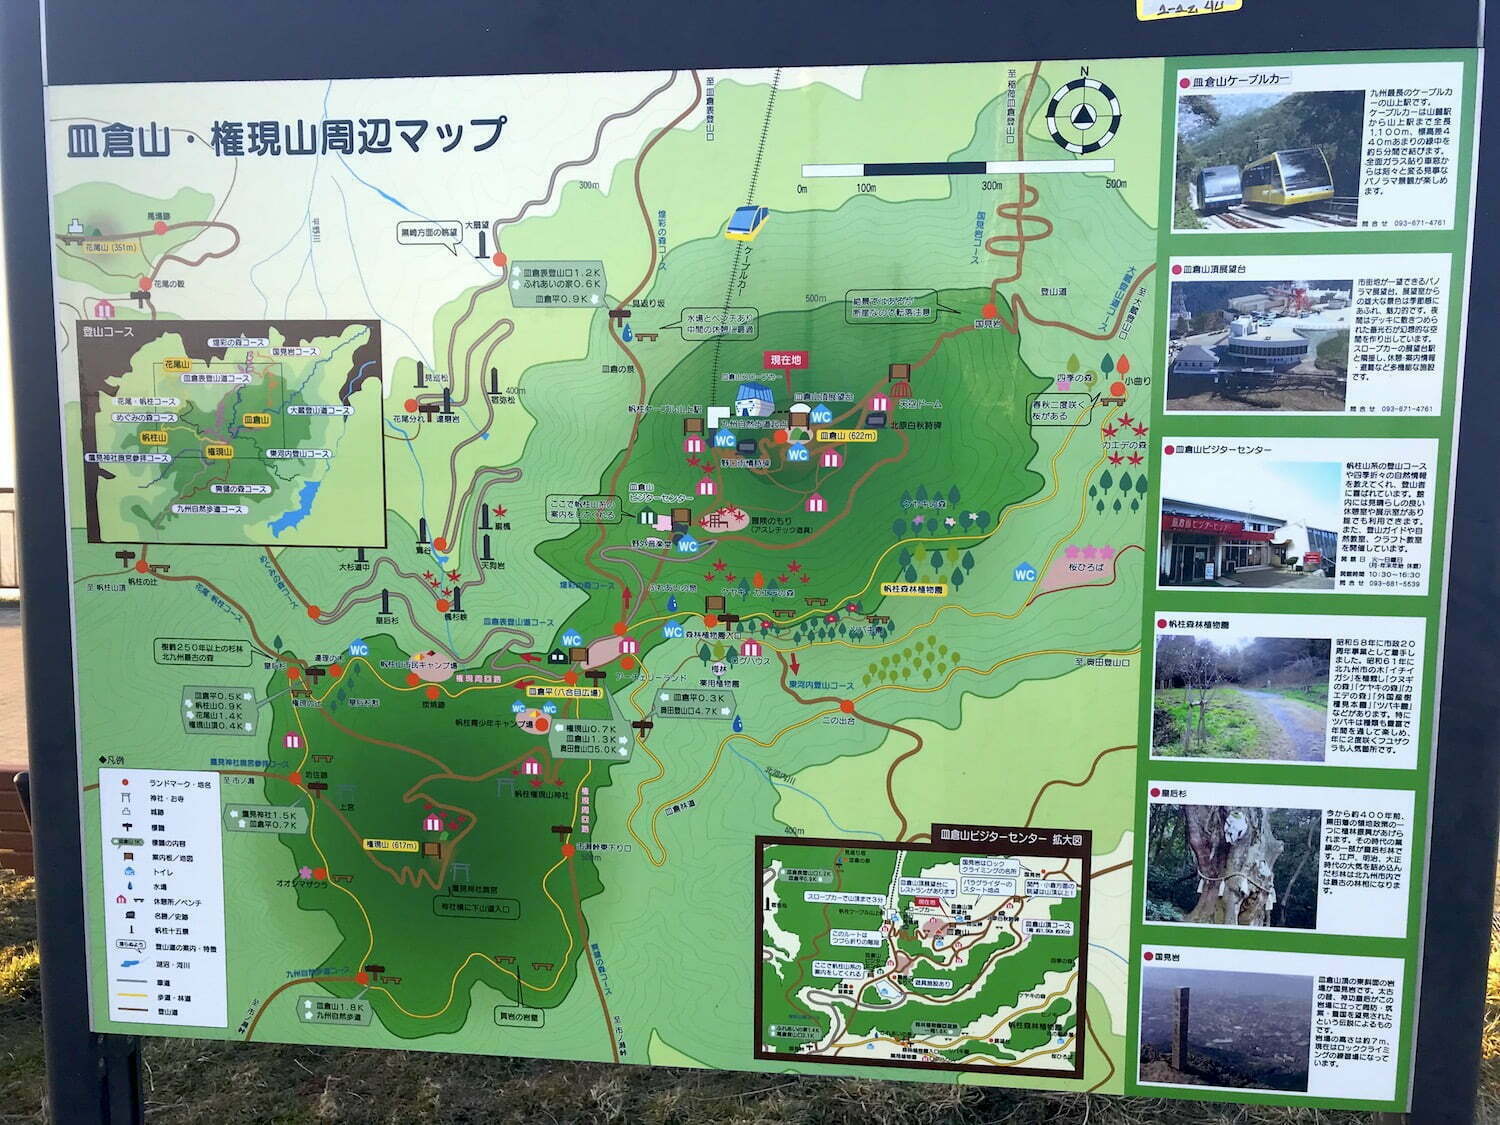  Mt. Sarakura explanation